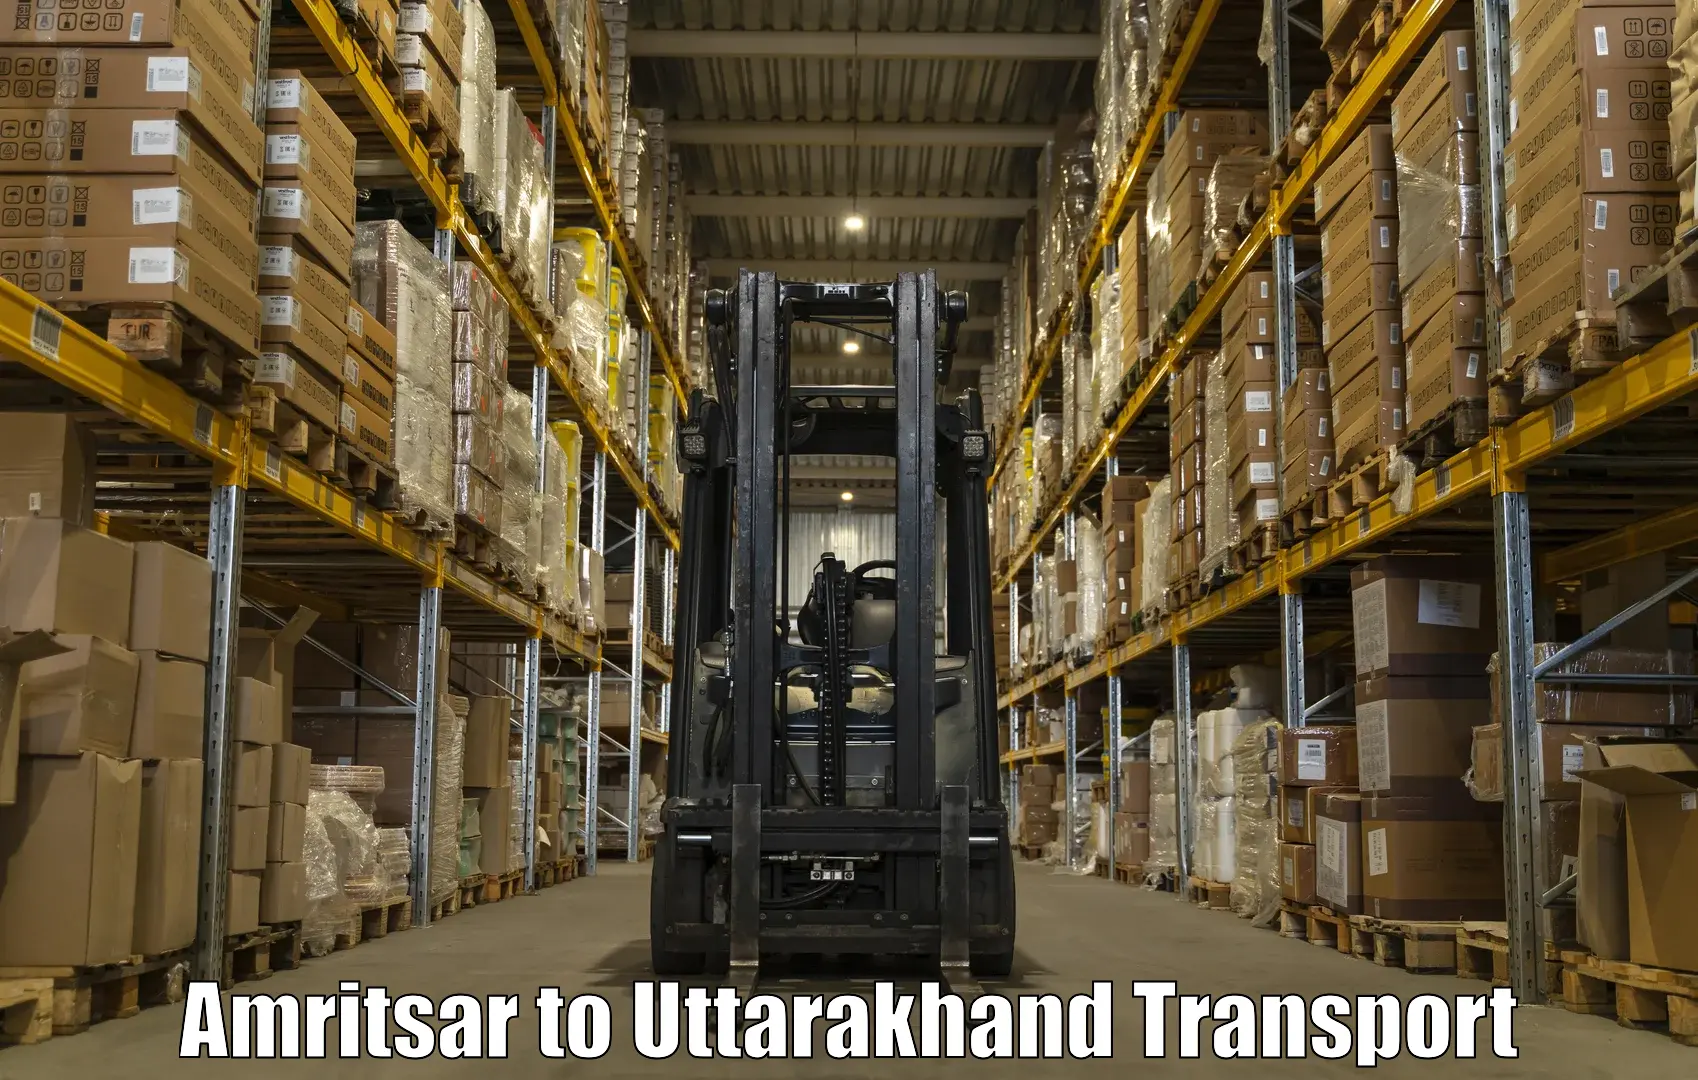 Lorry transport service Amritsar to Lansdowne